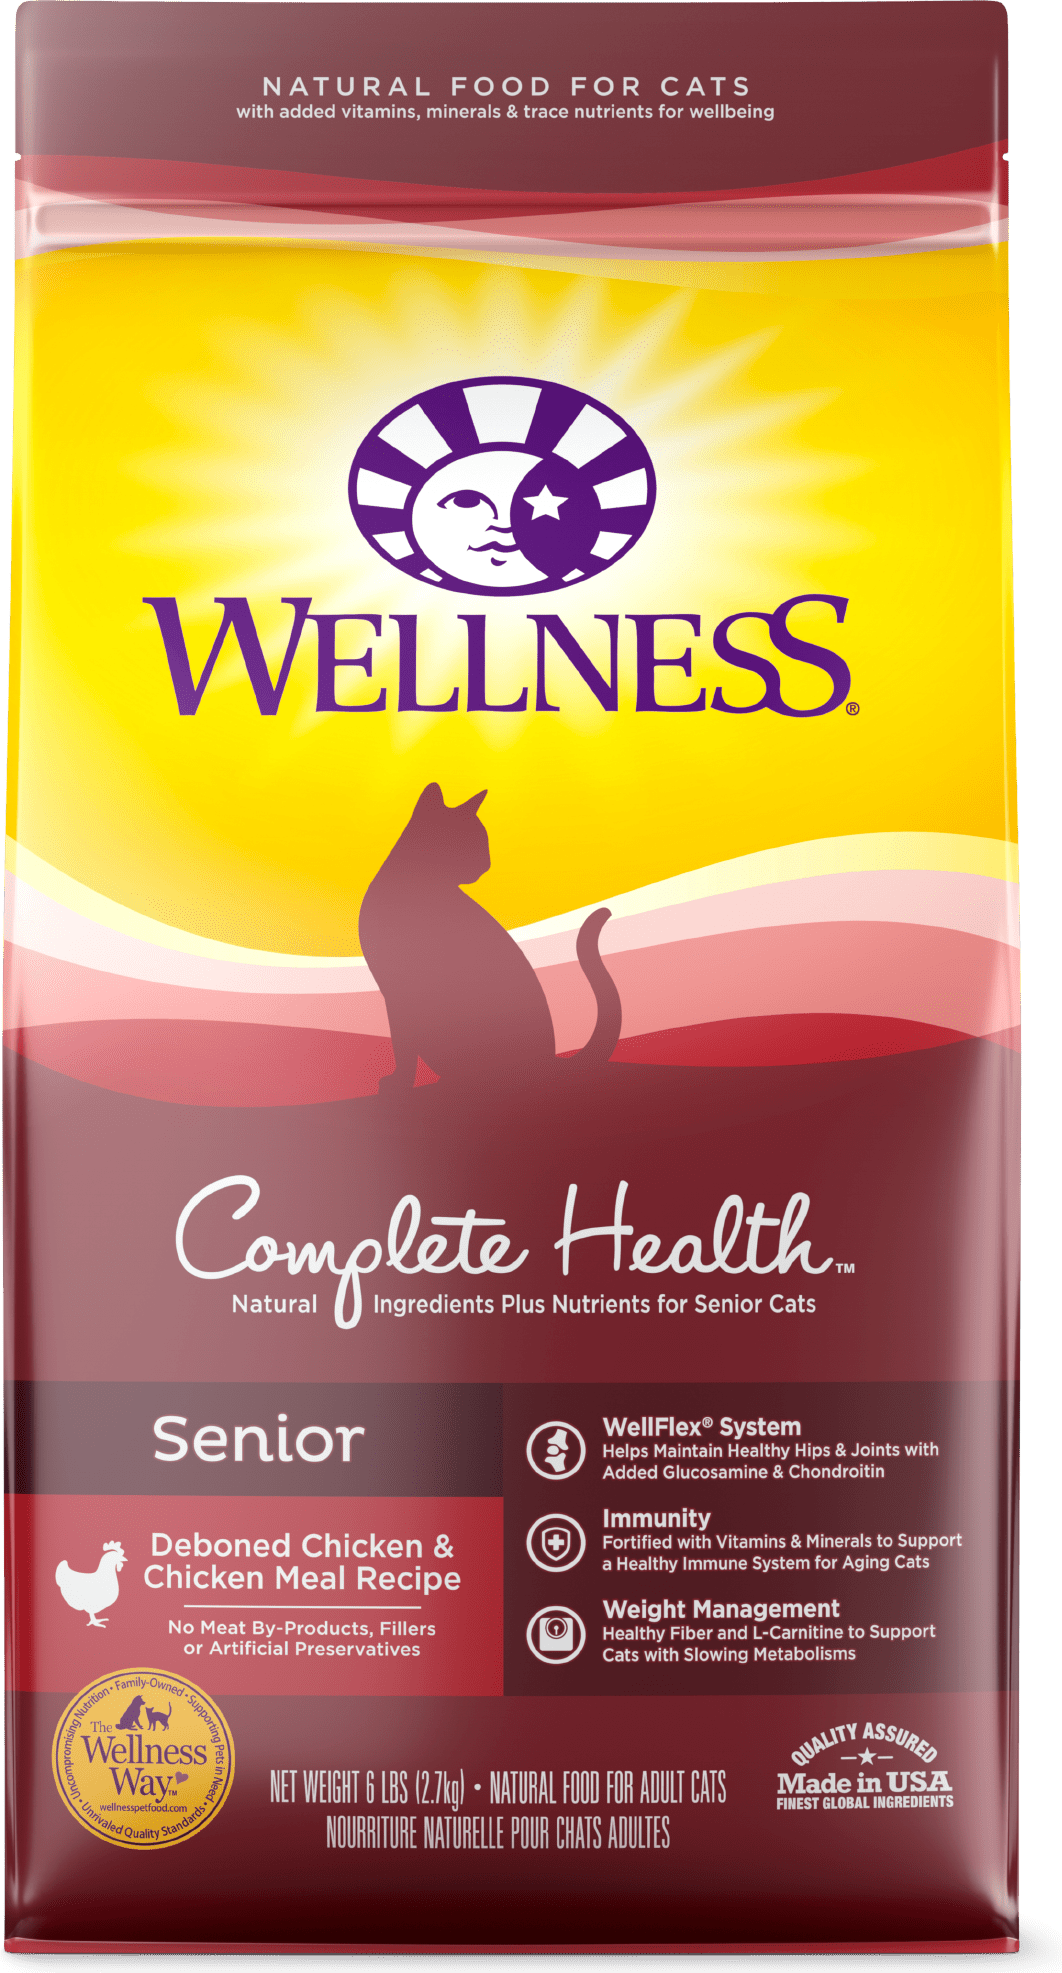 Wellness Complete Health Senior Senior: Deboned Chicken & Chicken Meal